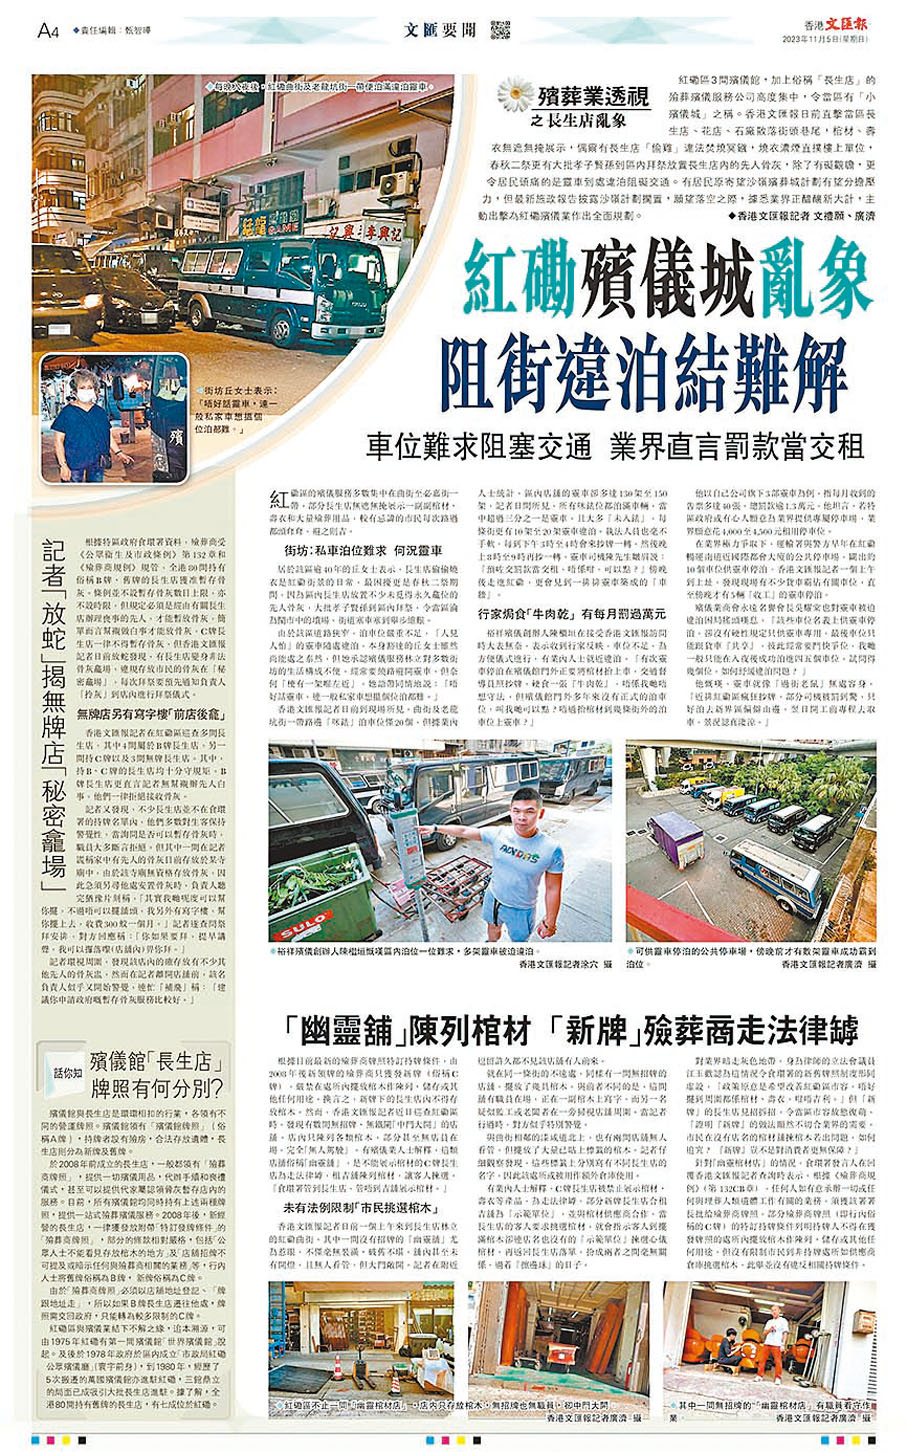 ◆香港文匯報早前刊登調查報道揭露殯儀業亂象。